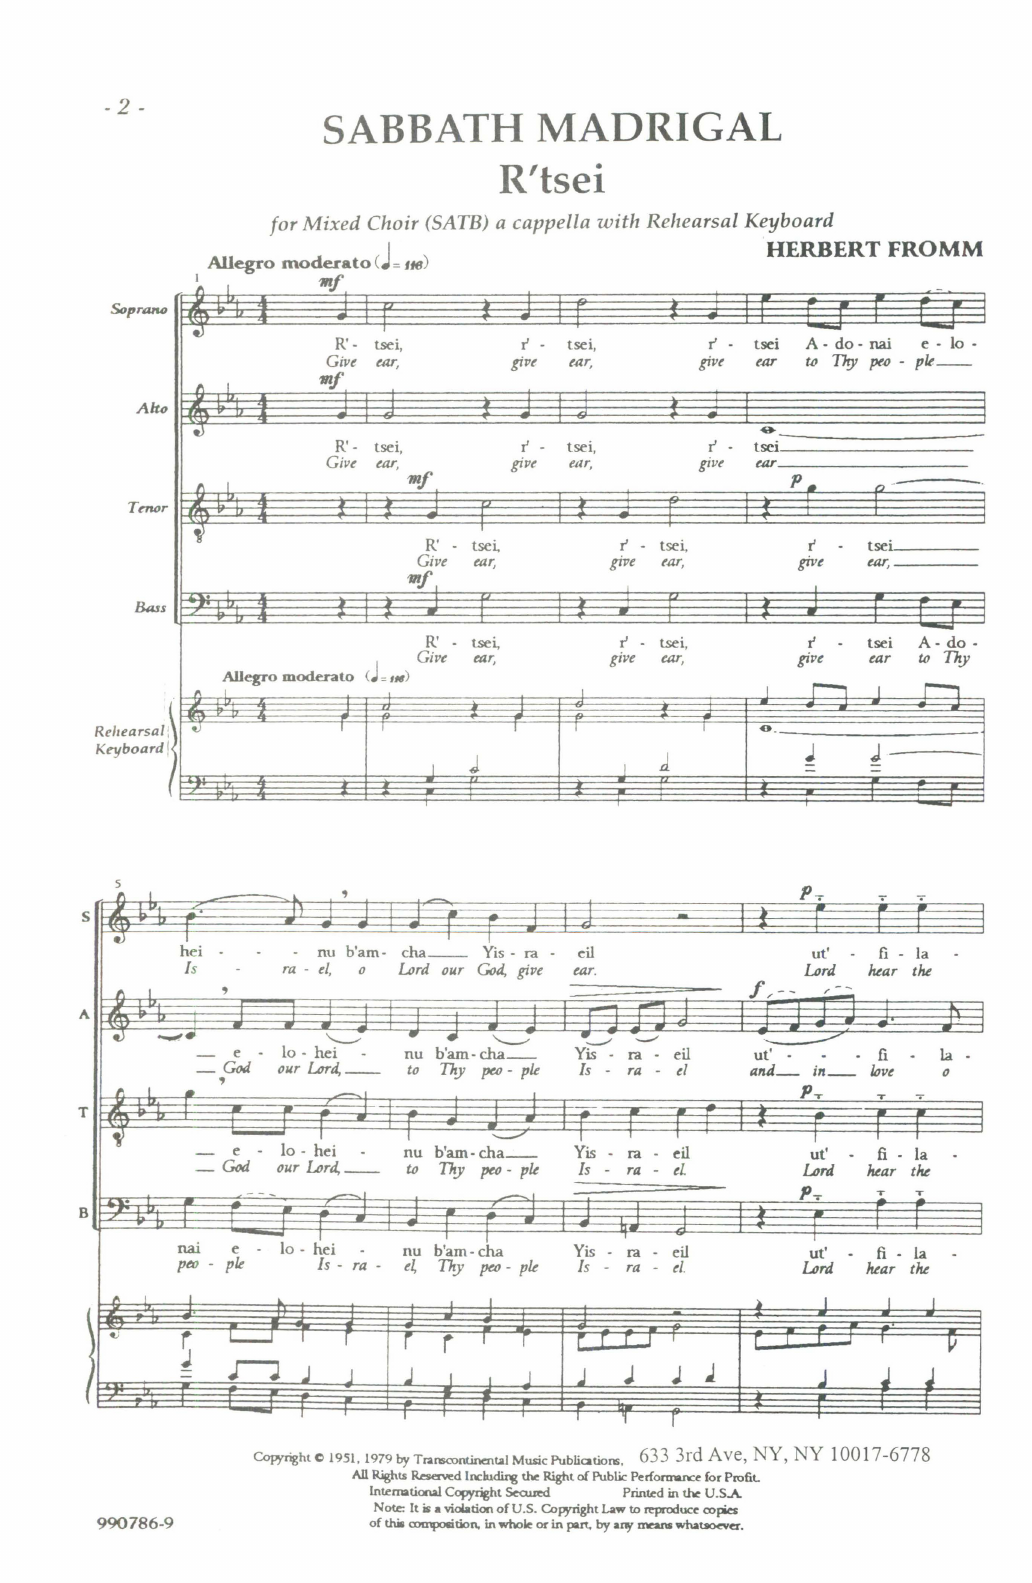 Herbert Fromm Sabbath Madrigal (R'tsei) Sheet Music Notes & Chords for SATB Choir - Download or Print PDF